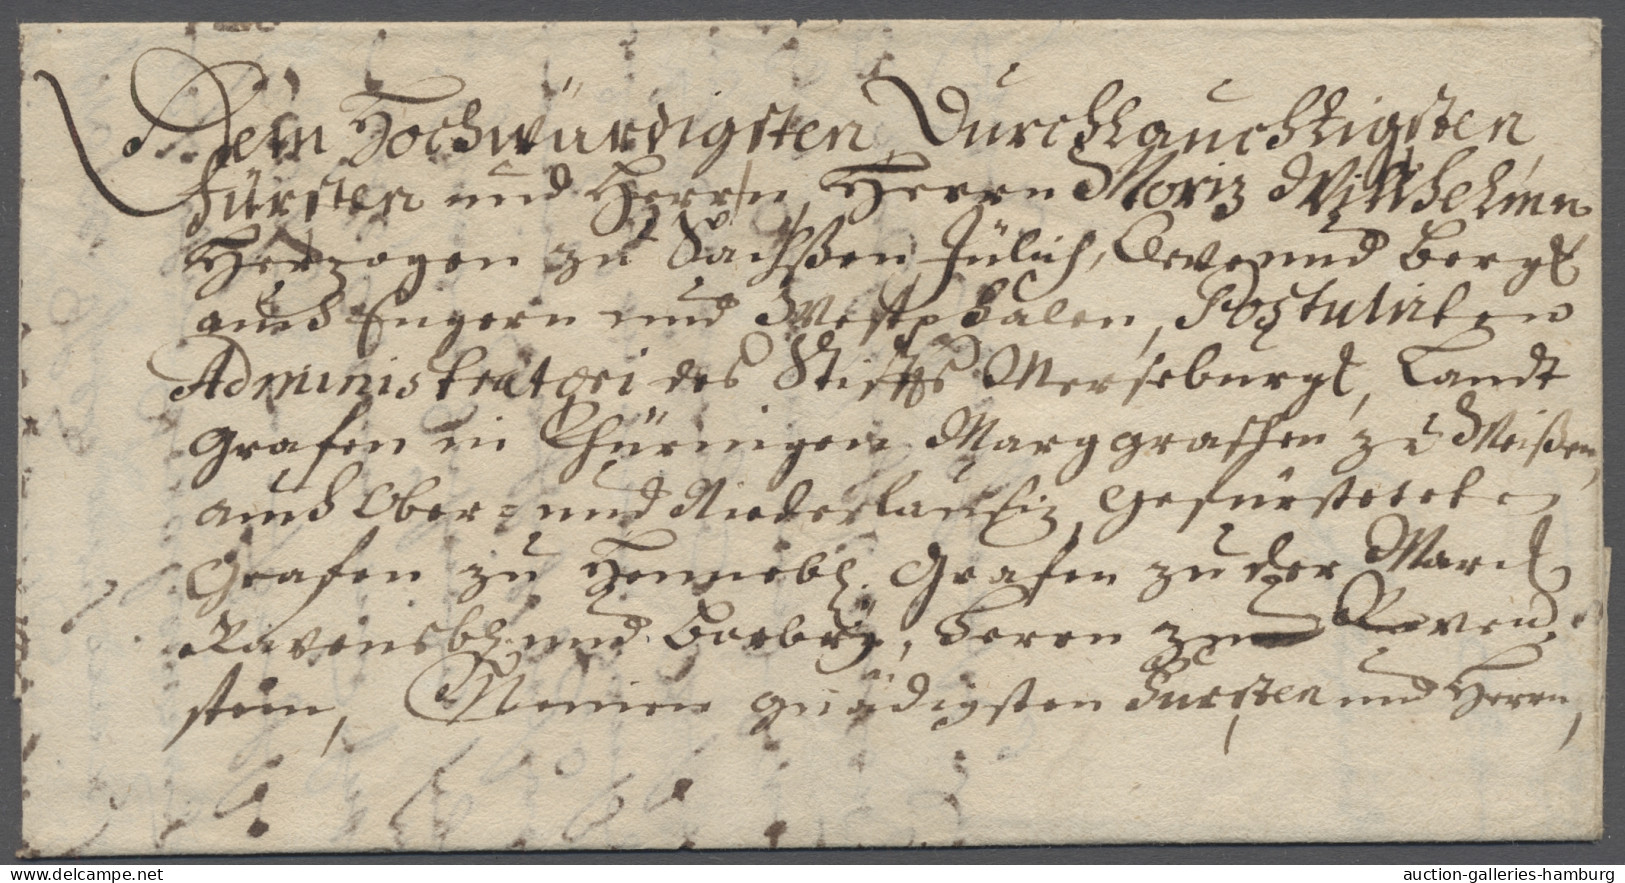 Brf. Sachsen - Vorphilatelie: 1727, Faltbrief Mit Inhalt An Herzog Moritz Wilhelm Von - Préphilatélie